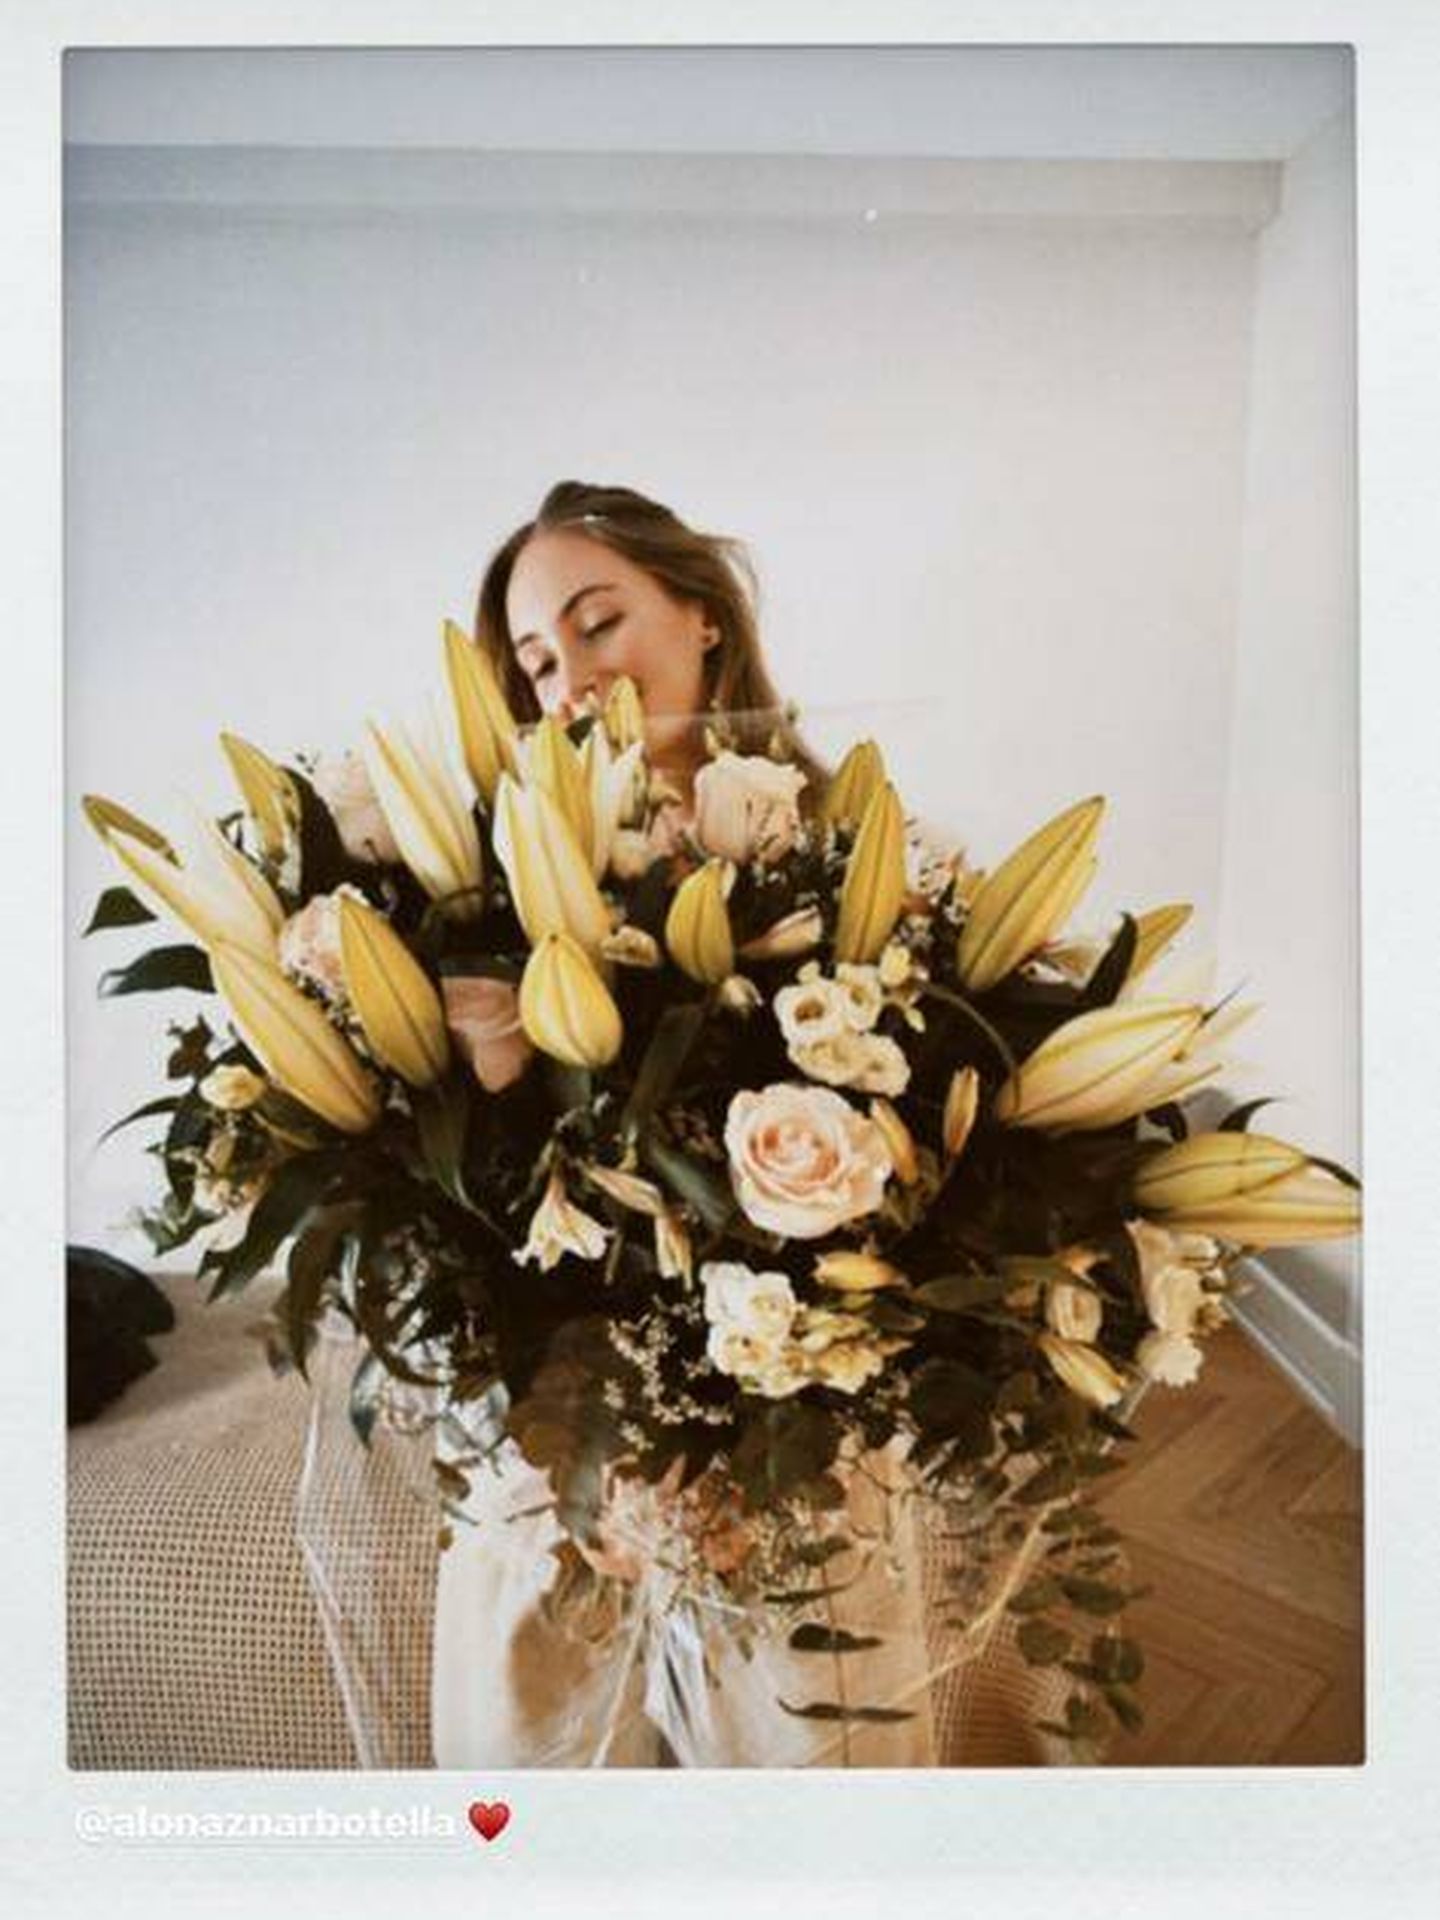 Renata Collado posa con el ramo de flores regalo de Alonso Aznar. (Redes)